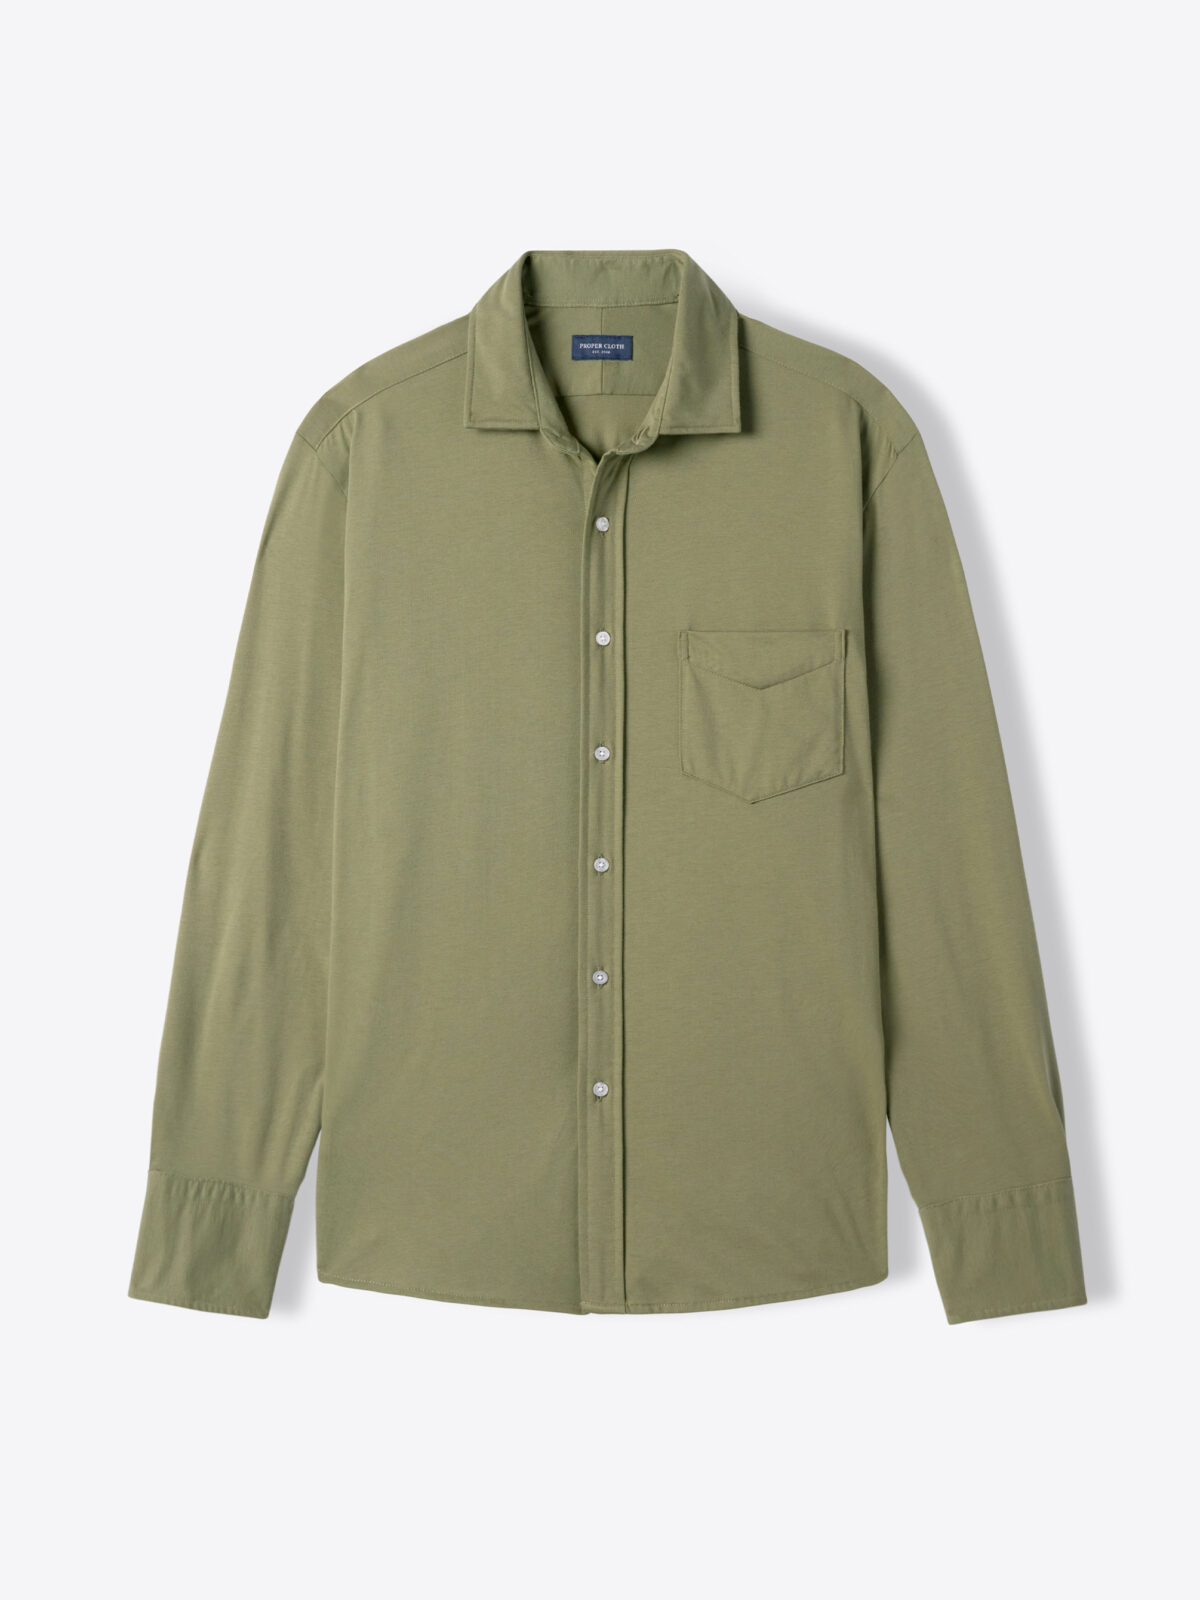 Moss Japanese Cotton T-Shirt Jersey Shirt by Proper Cloth